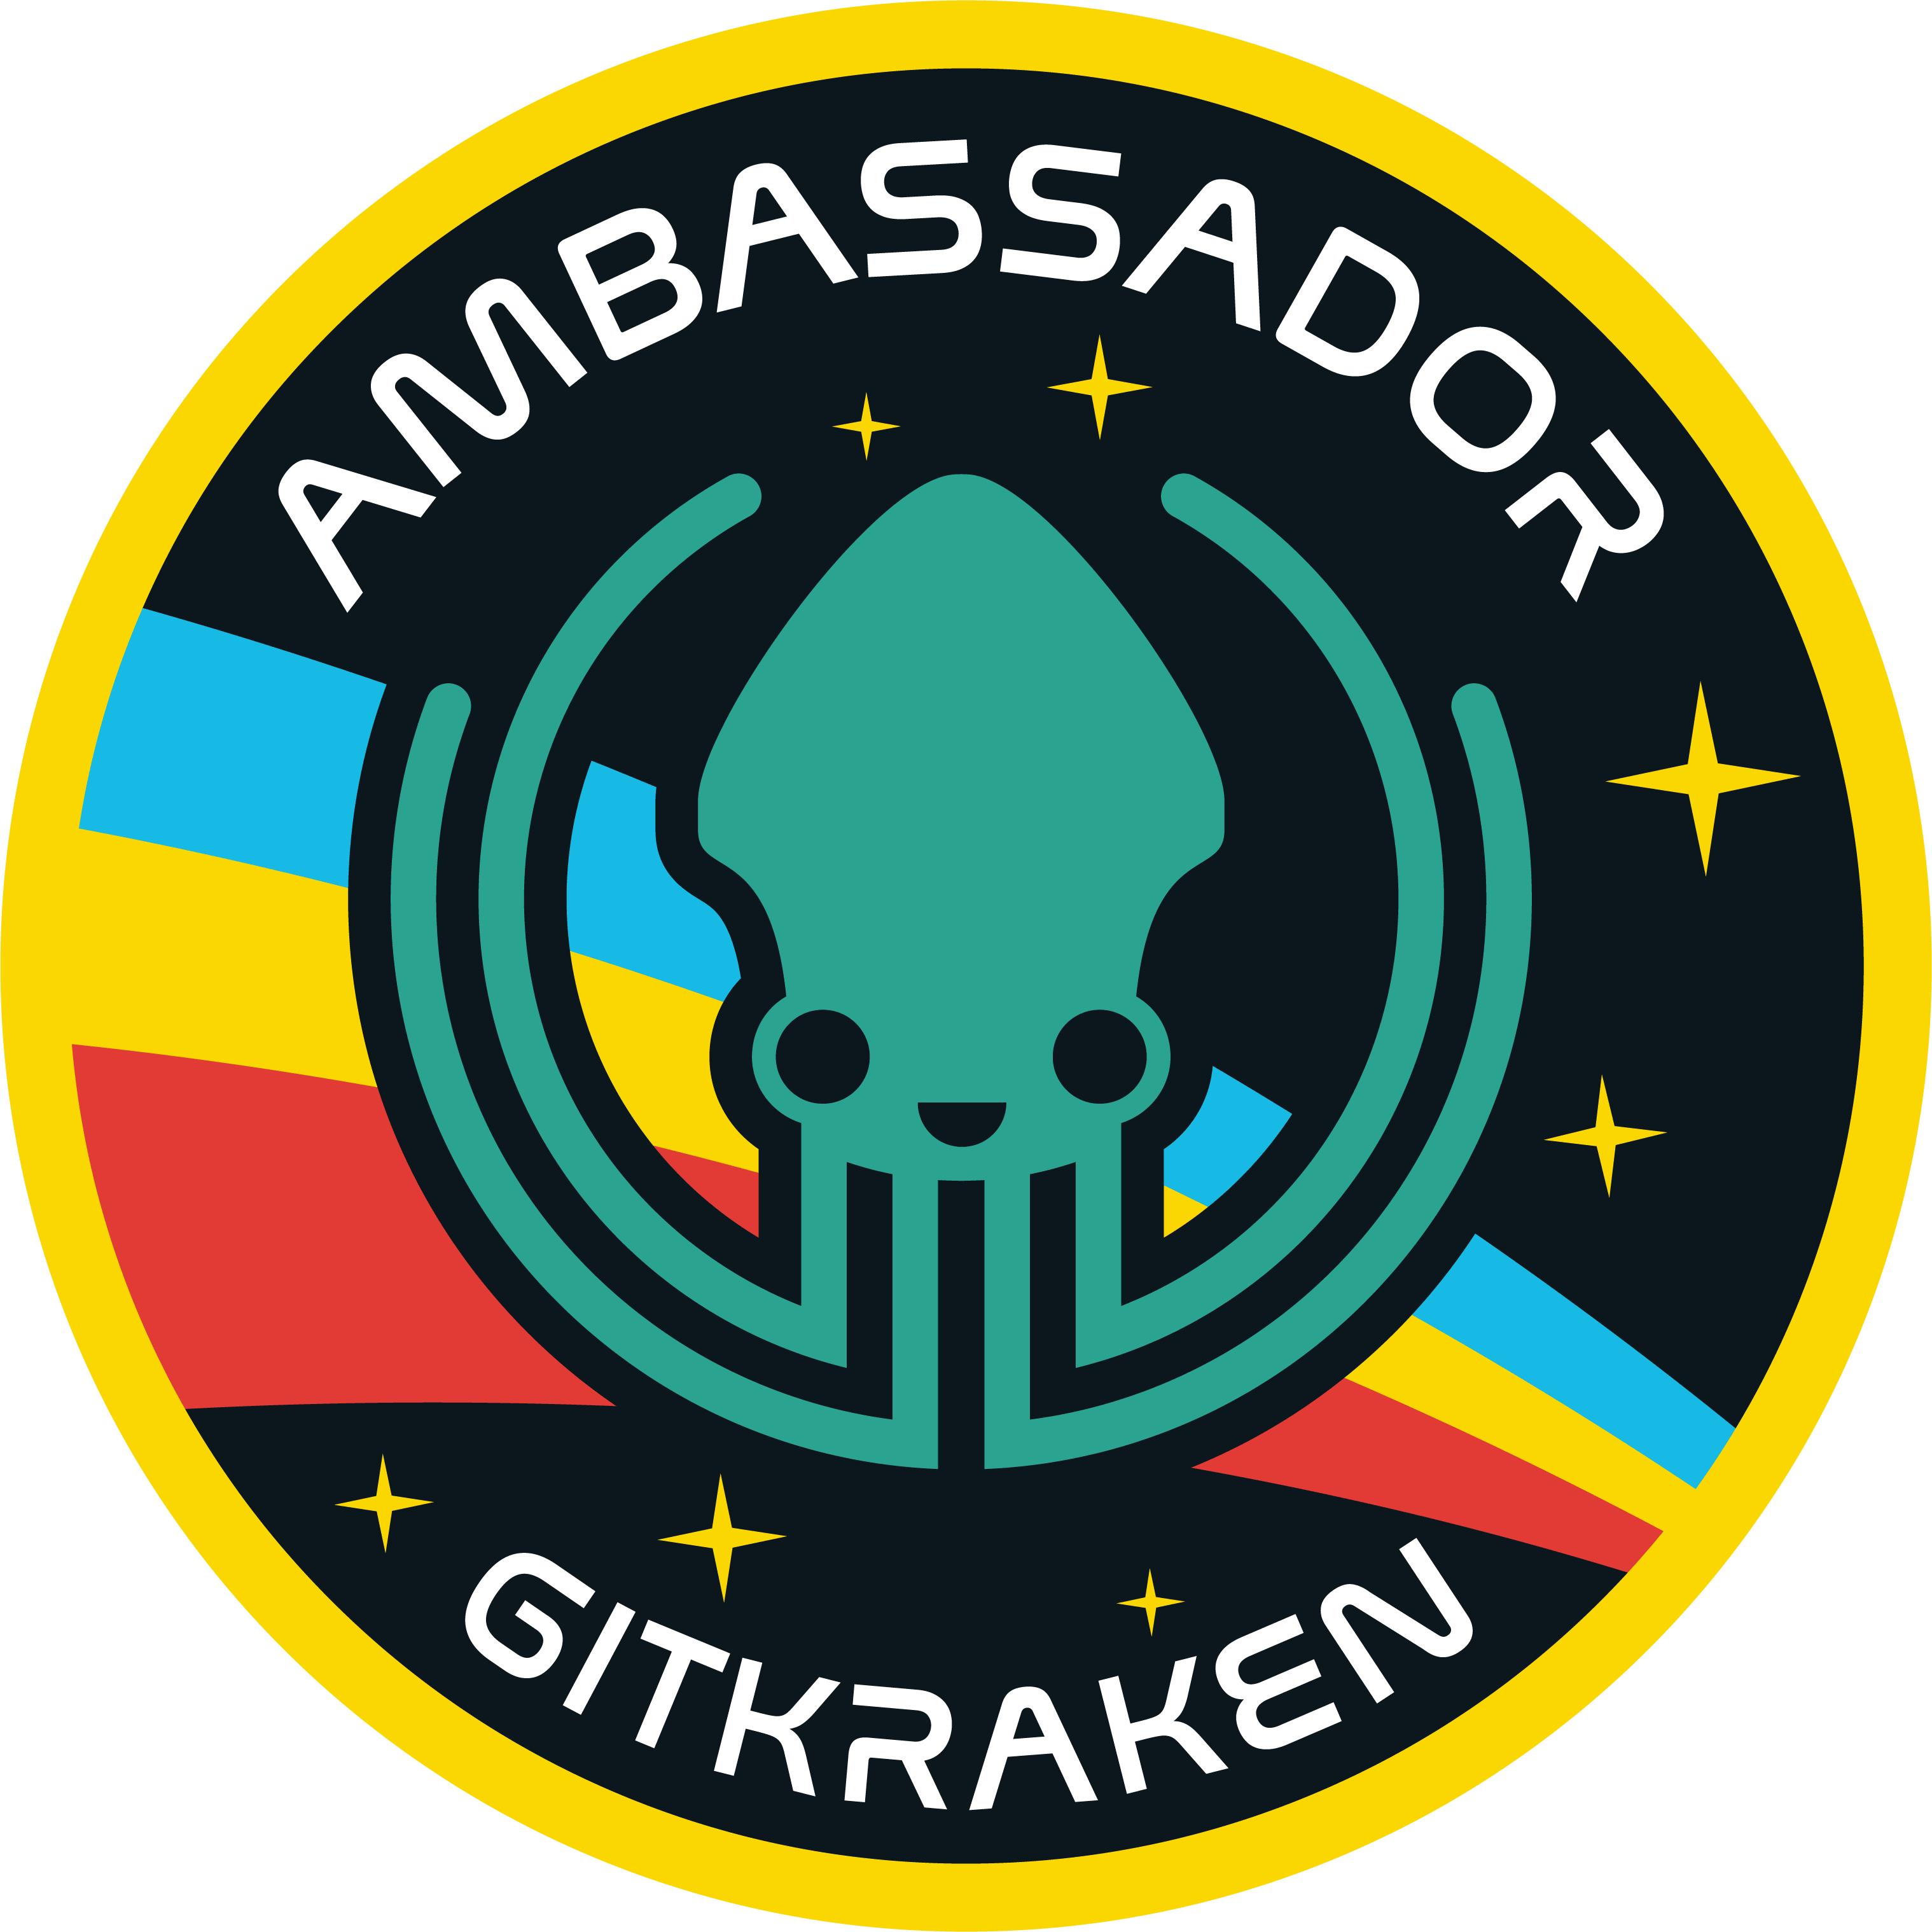 GitKraken ambassador logo